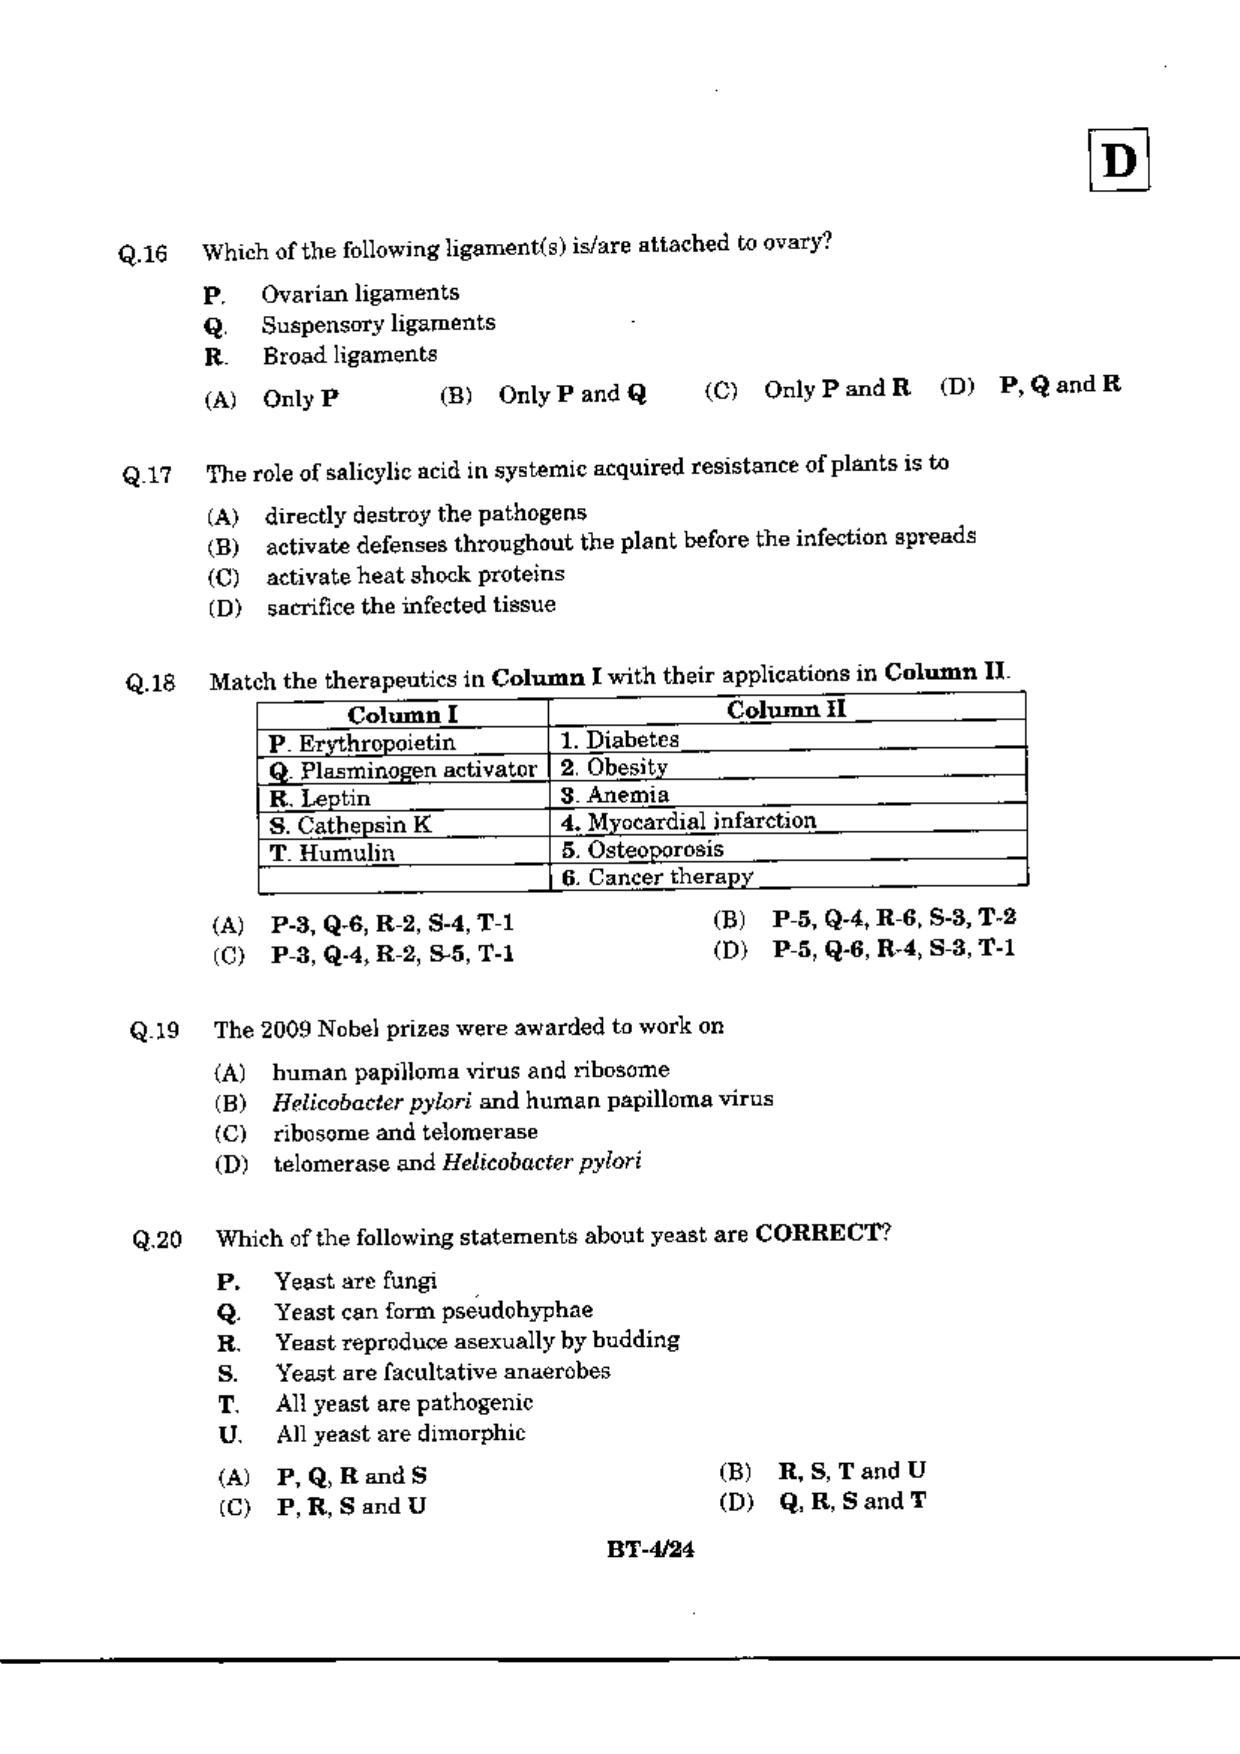 JAM 2010: BT Question Paper - Page 6